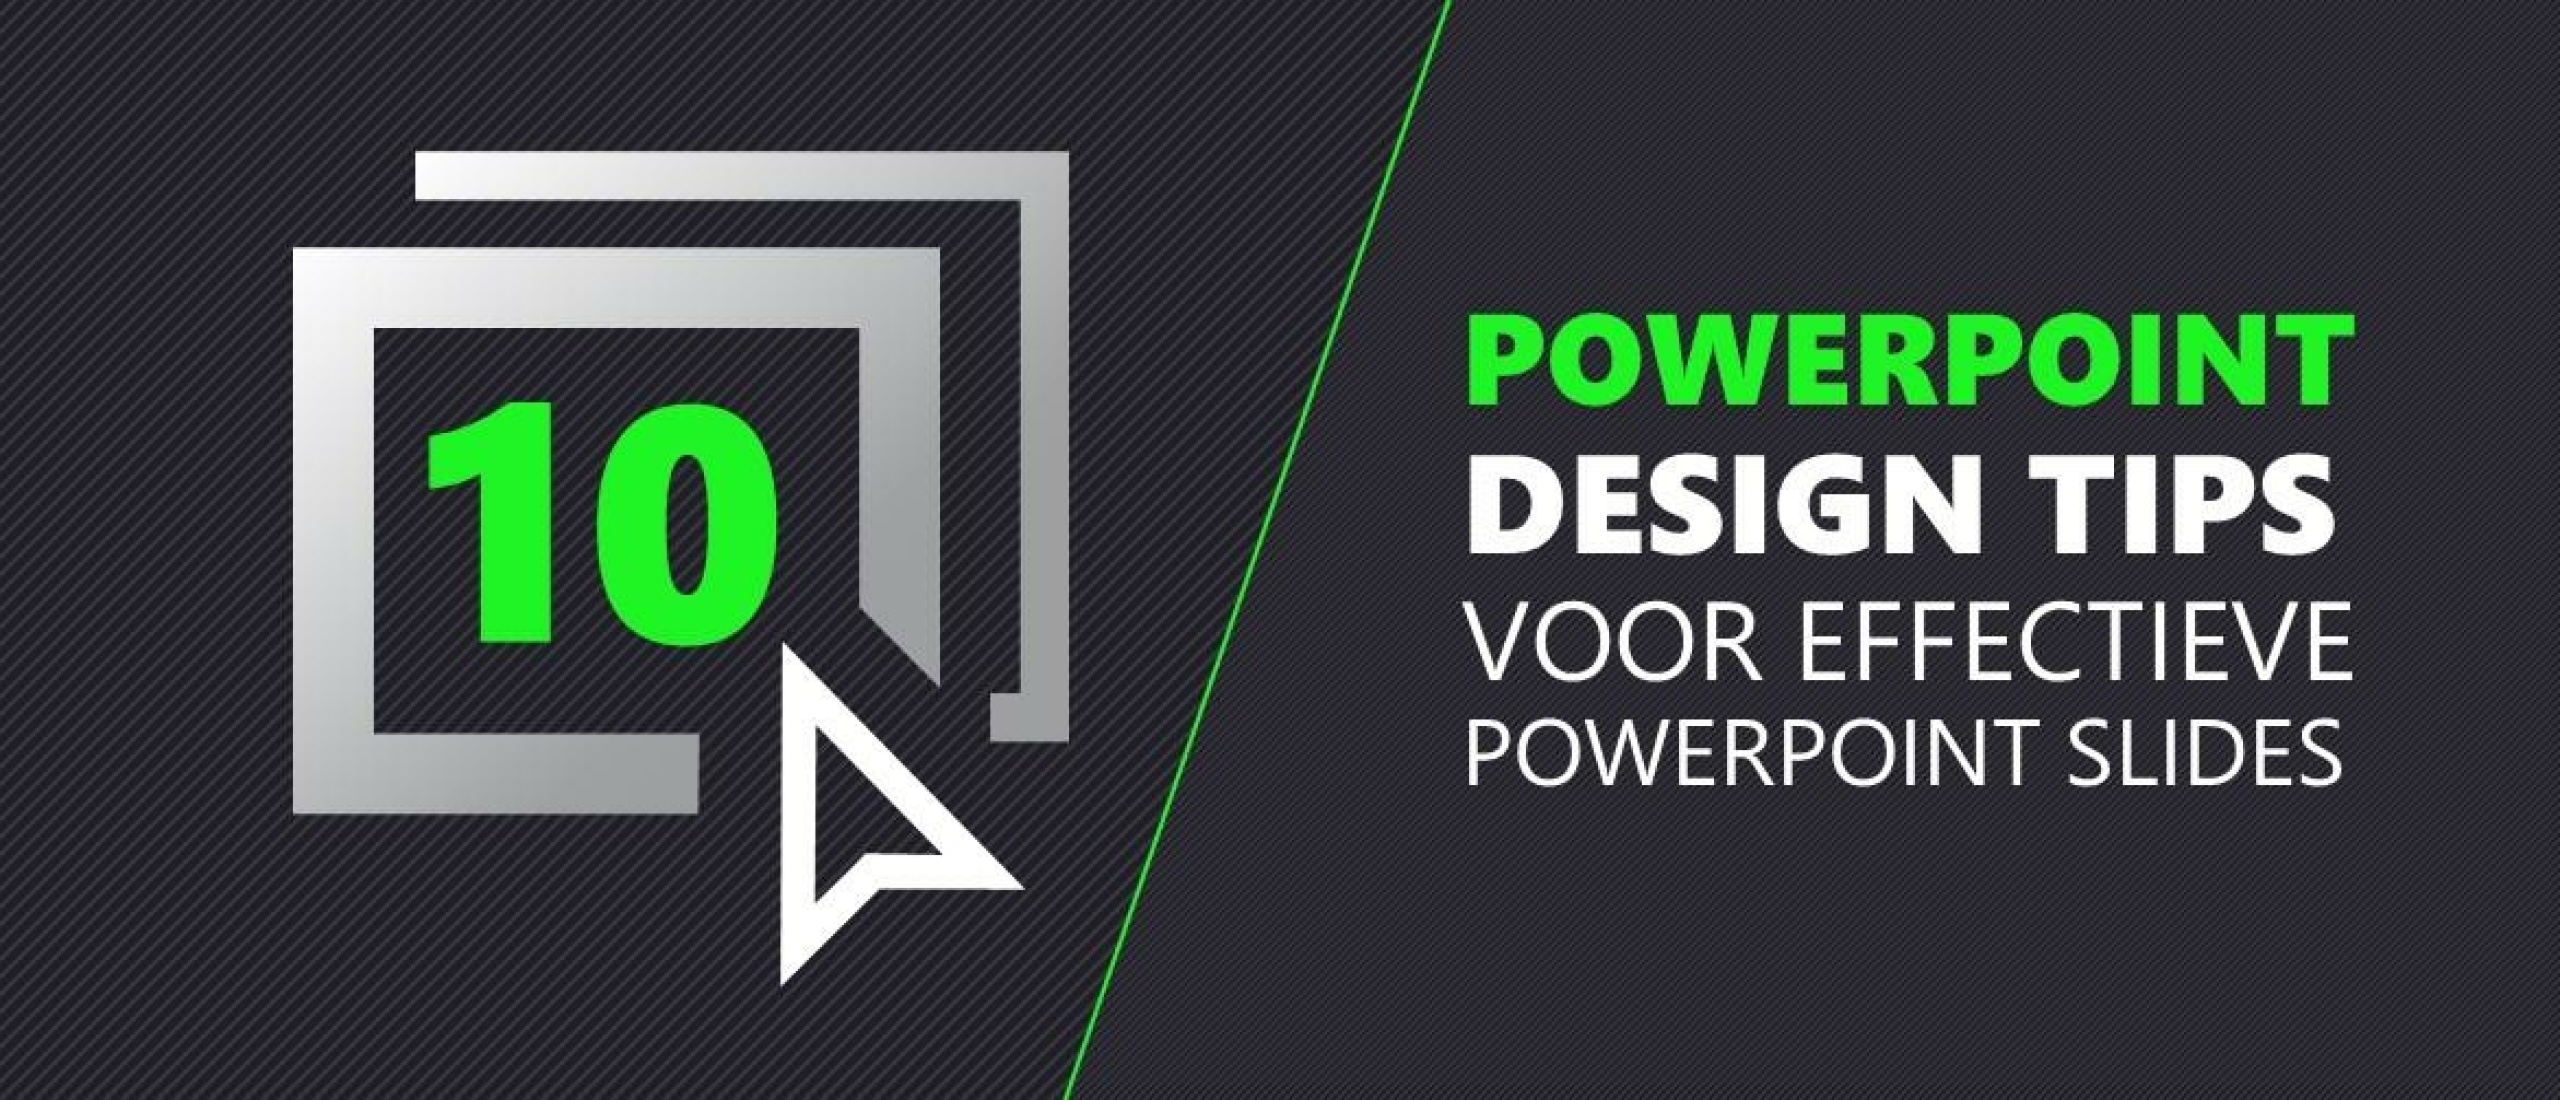 Powerpoint design tips voor effectieve powerpoint slides